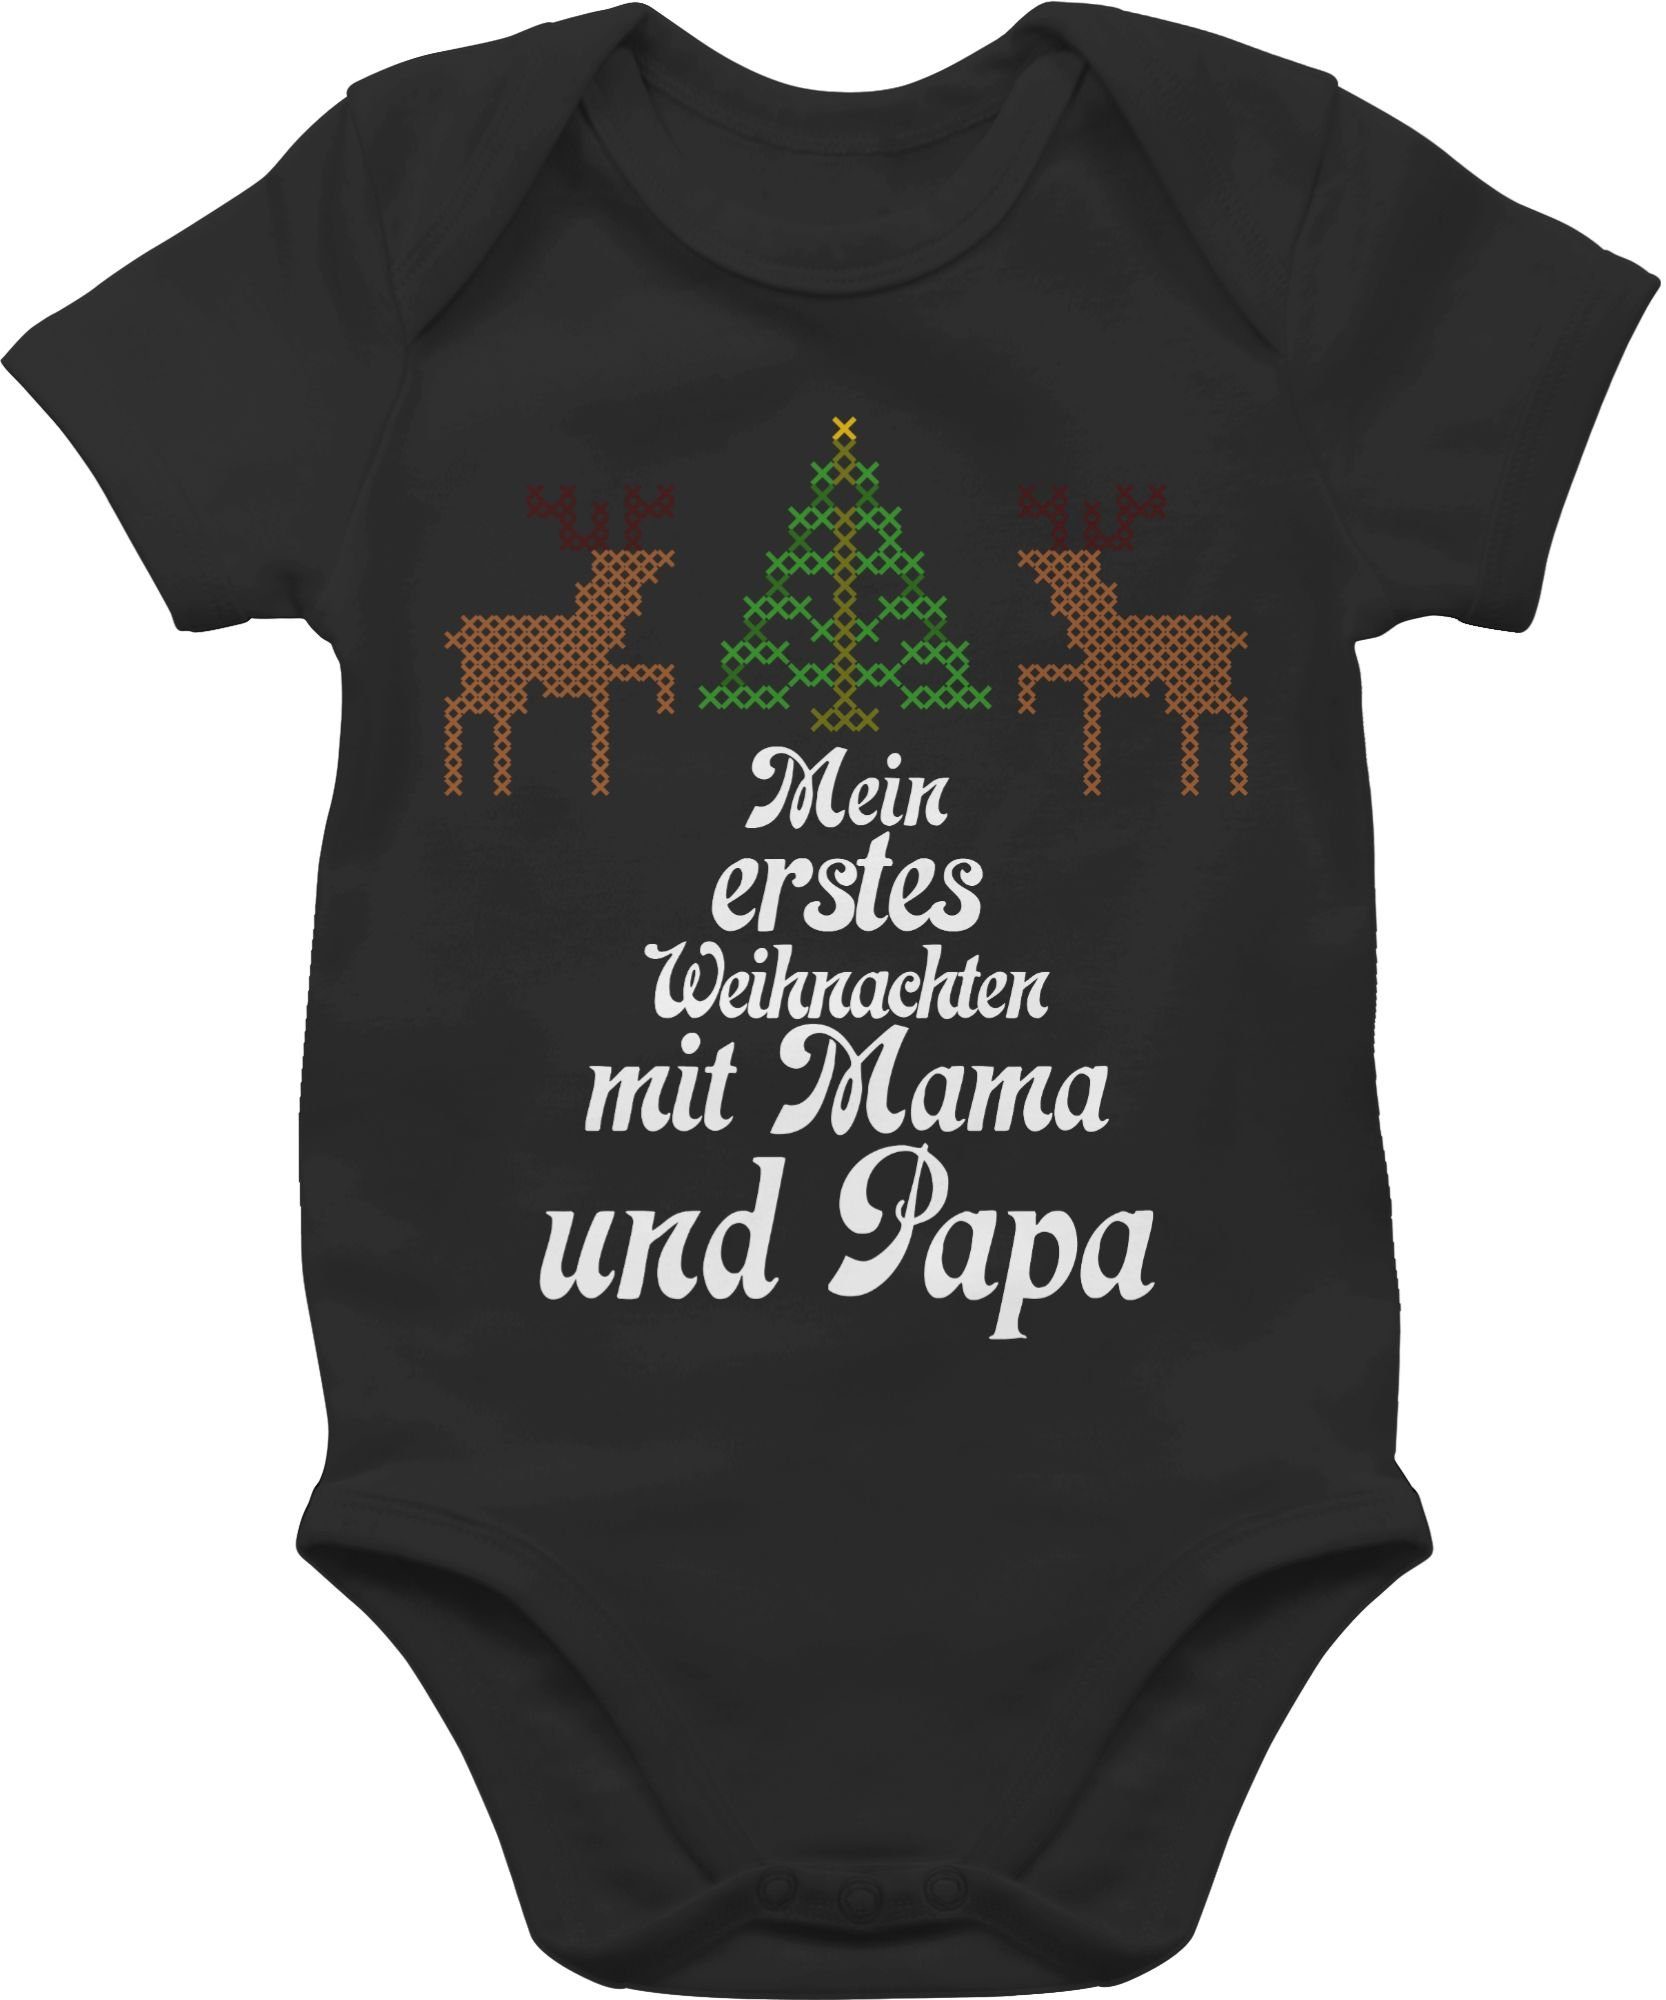 - Weihnachten erstes Baby Rentiere Shirtracer - 3 Kleidung Schwarz Mein Weihnachten sweater Ugly Shirtbody